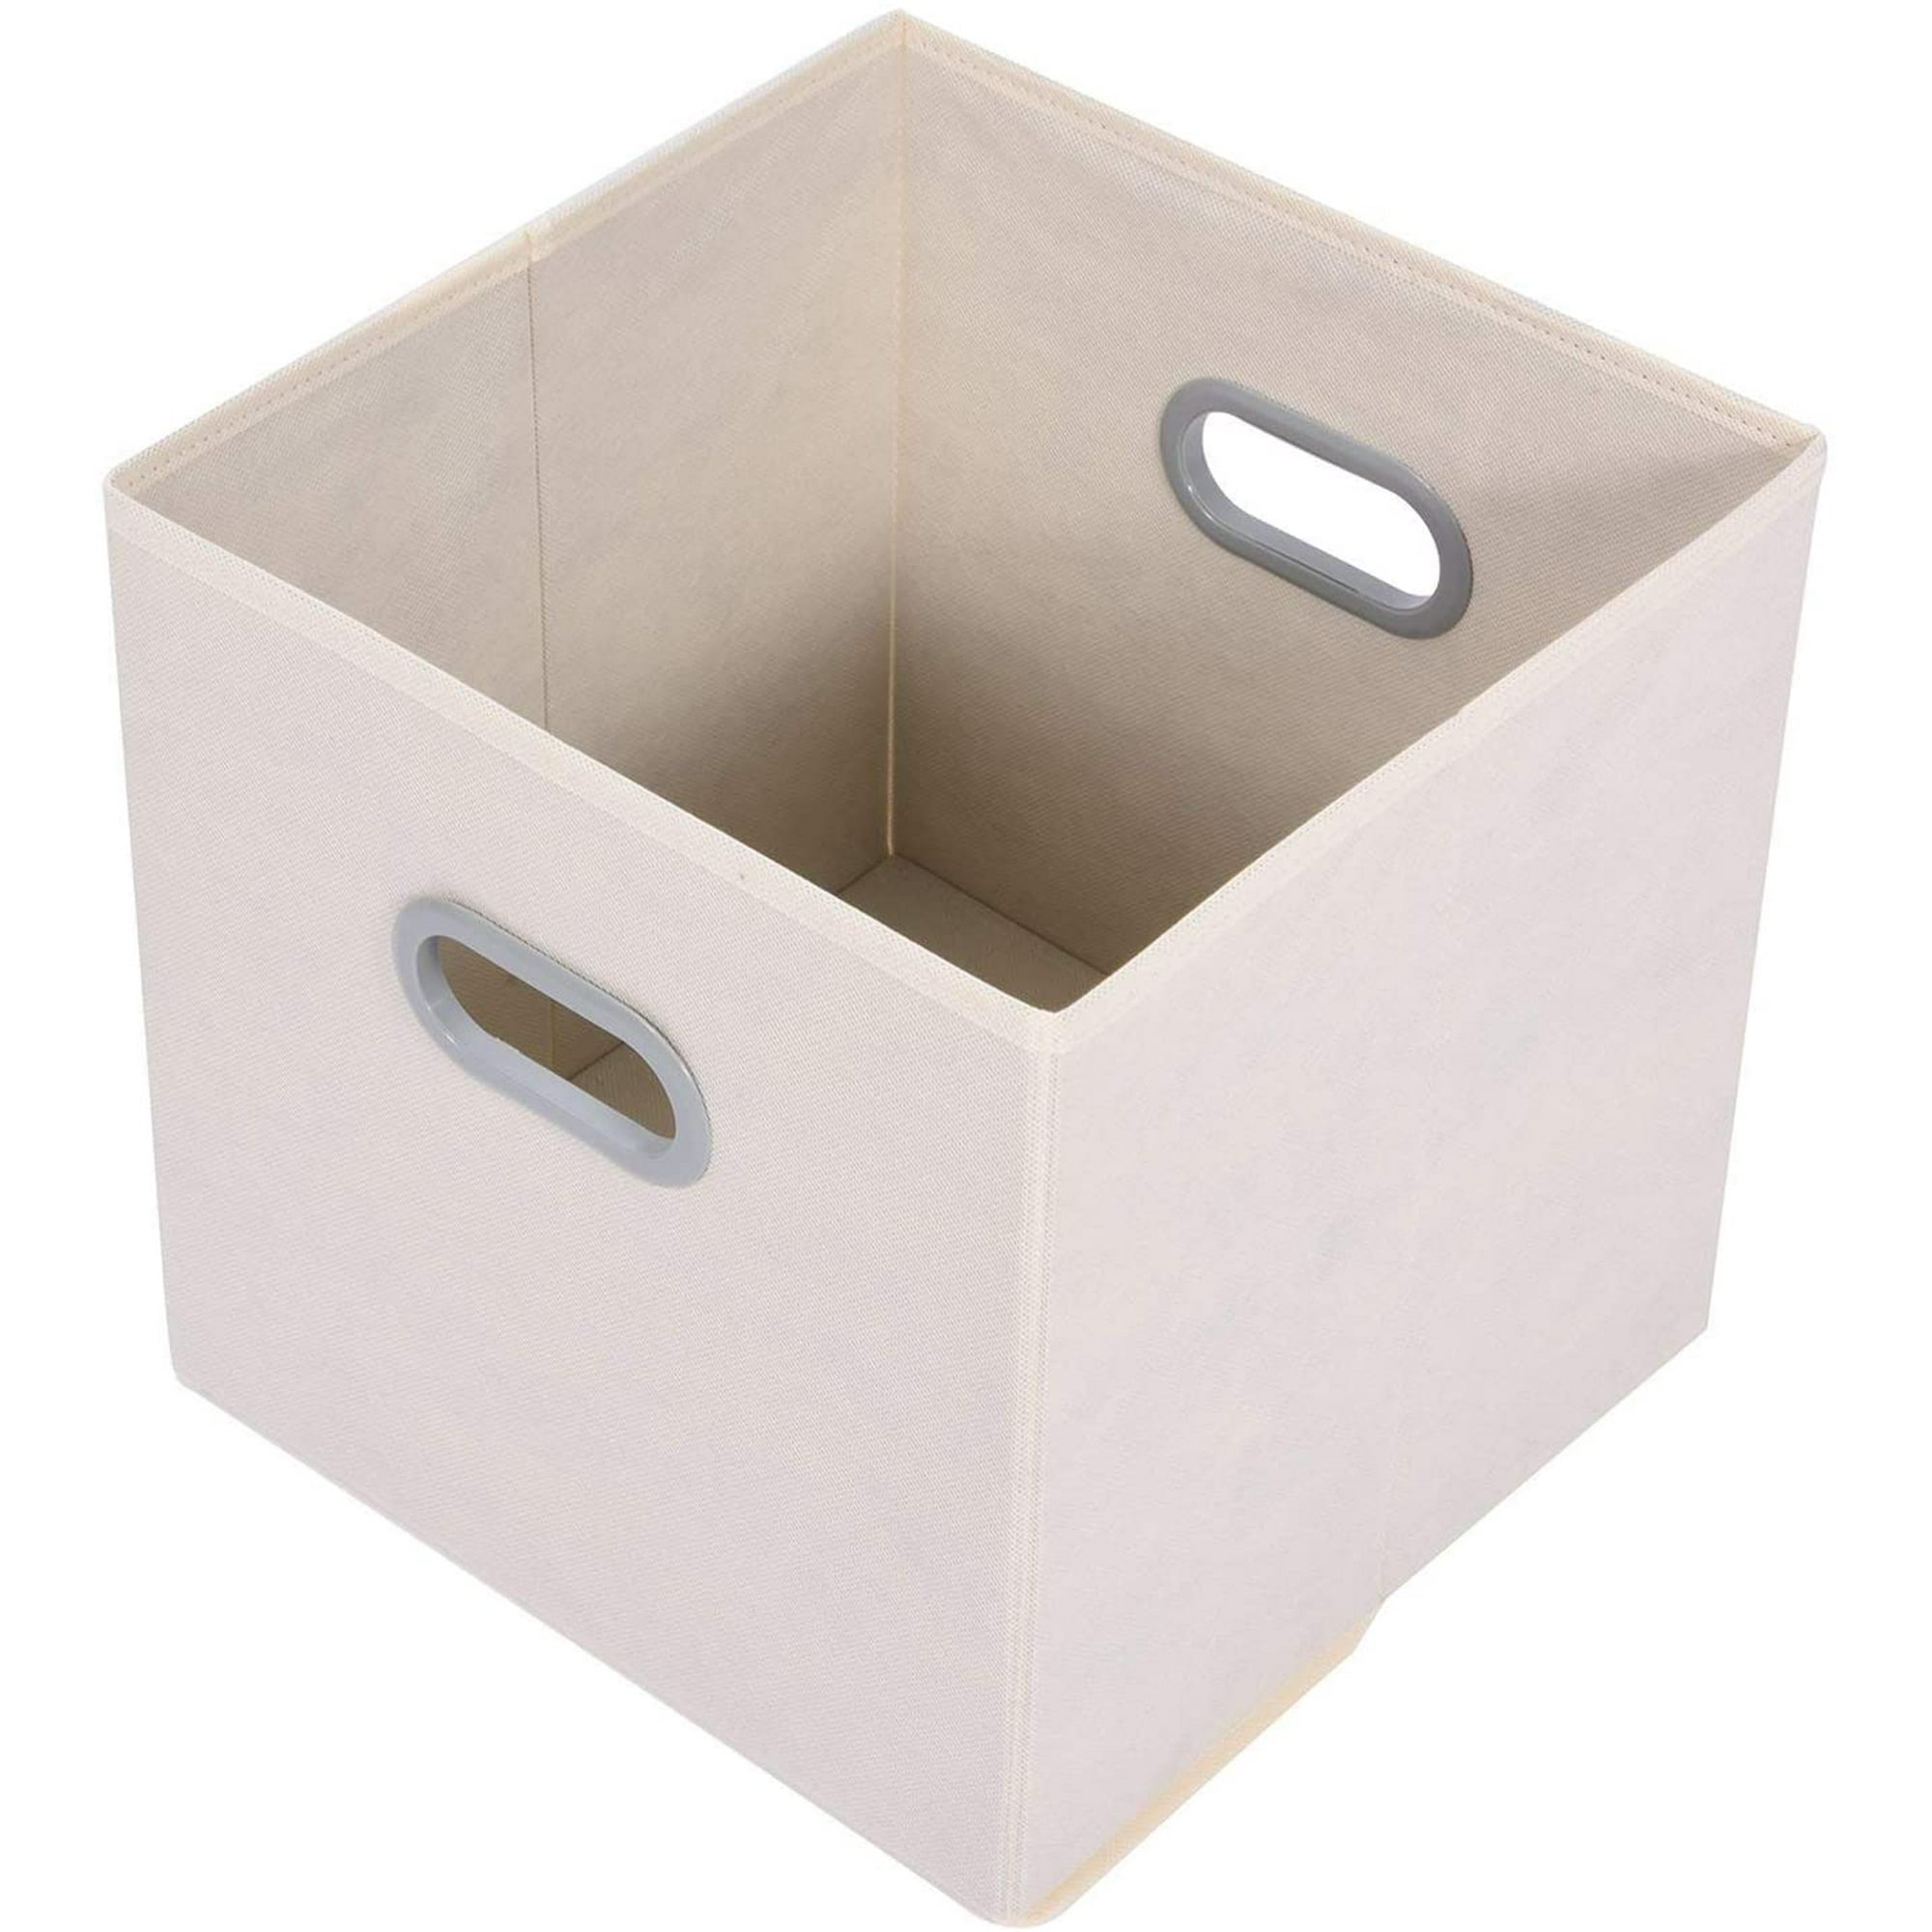 4 Caja de Almacenaje Plegable, 26 x 26 x 28 cm Cubos de Almacenamiento de  Tela no Tejida, Cajas organizadoras para organizar Ropa, Juguetes y Sábanas